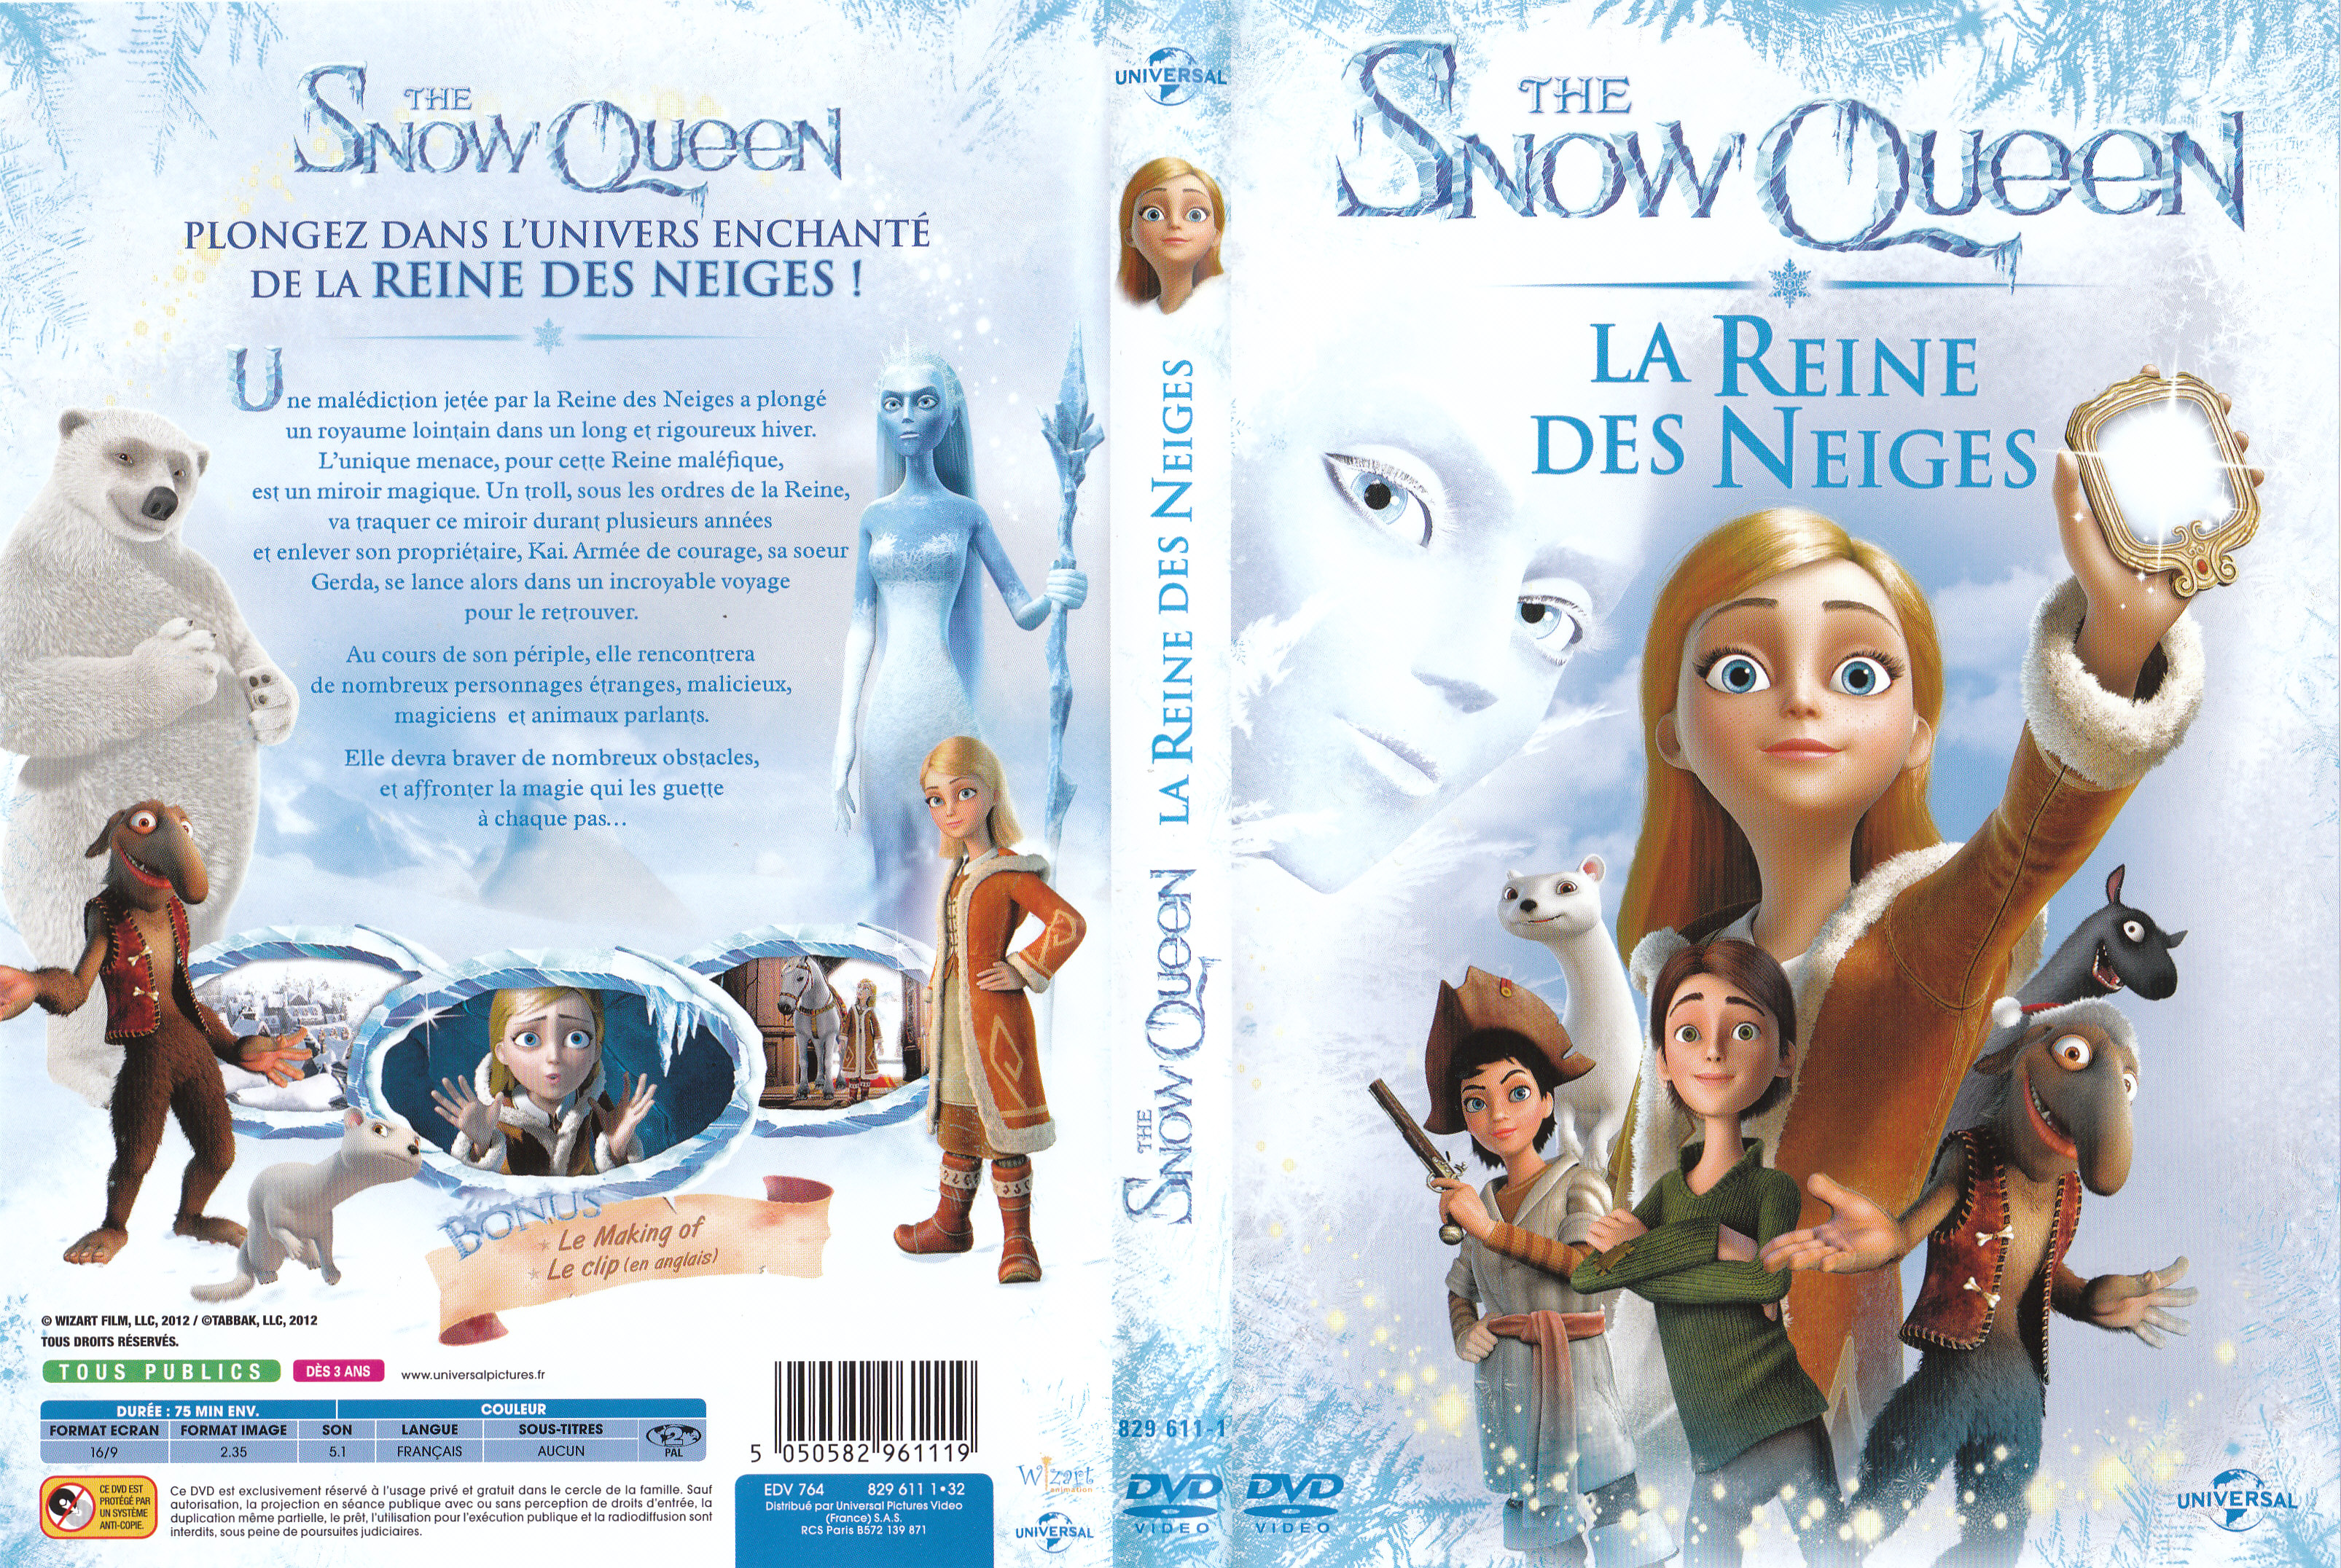 Jaquette DVD de The Snow Queen, la reine des neiges - Cinéma Passion